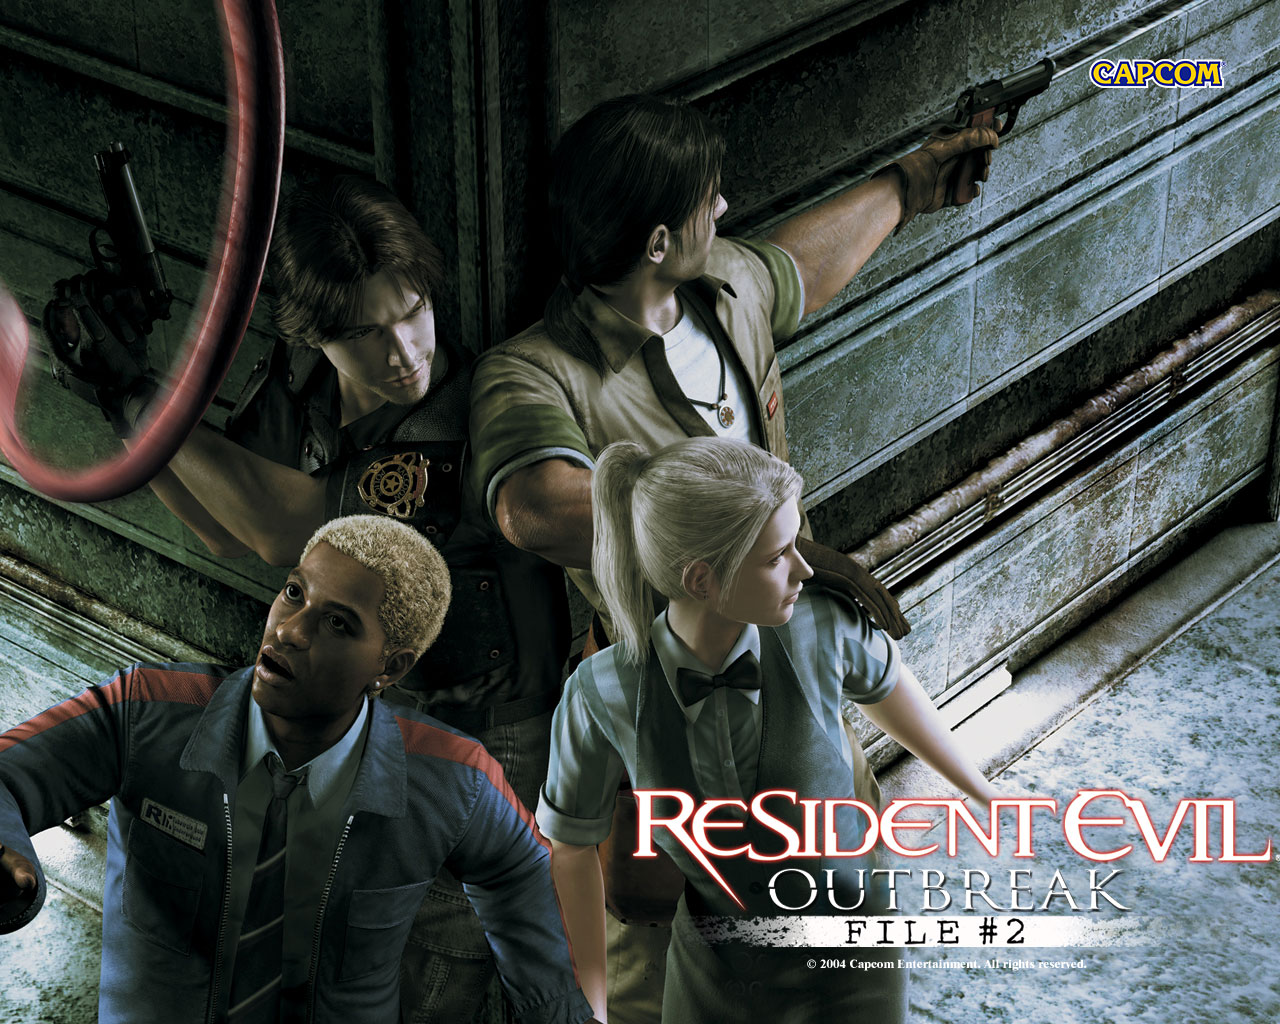 Resident_Evil_Outbreak_File2_08_1280x1024.jpg